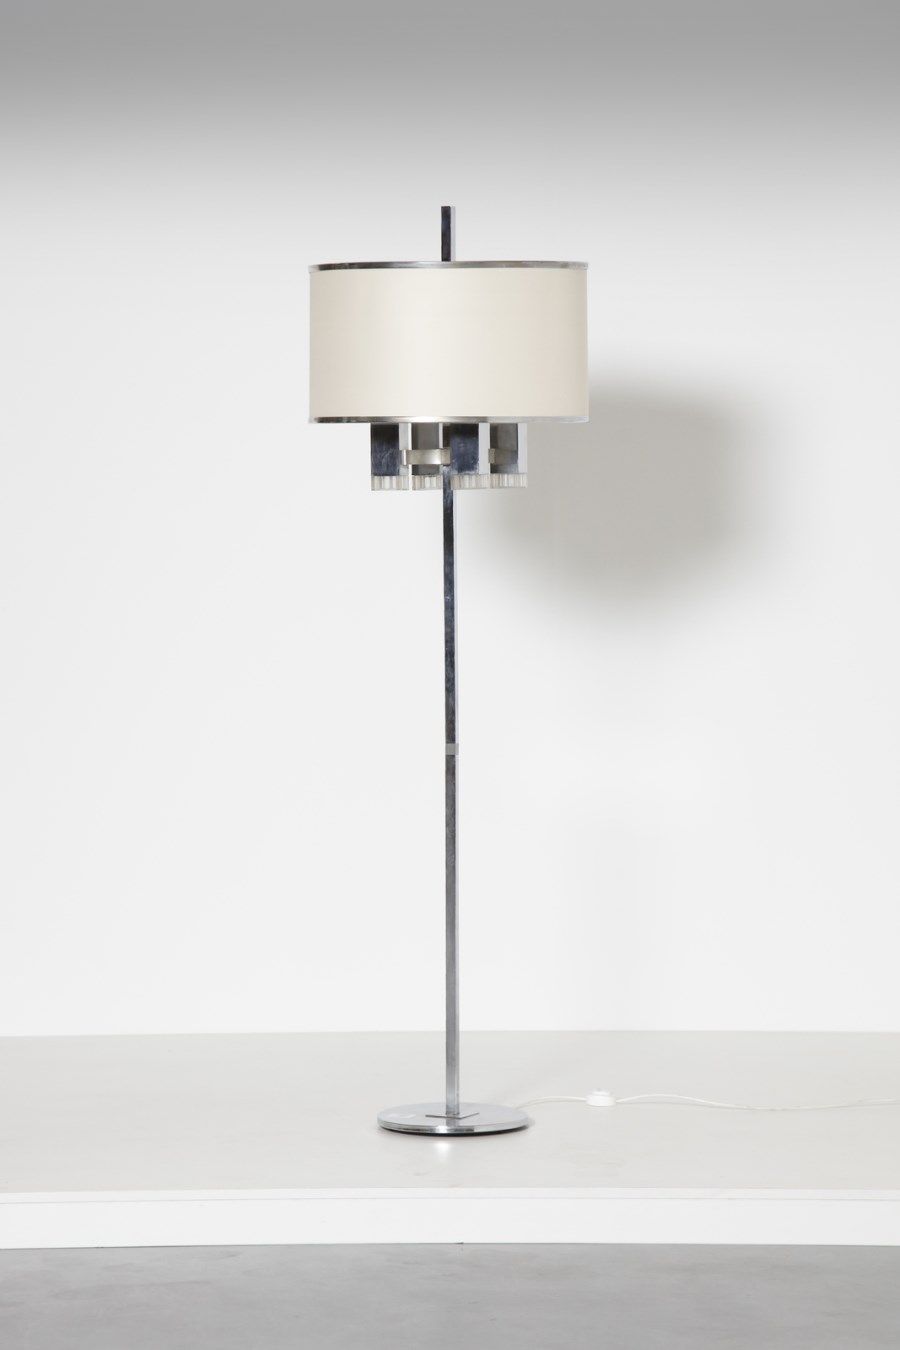 Standard lamp, 1970s. (Gaetano Scolari)